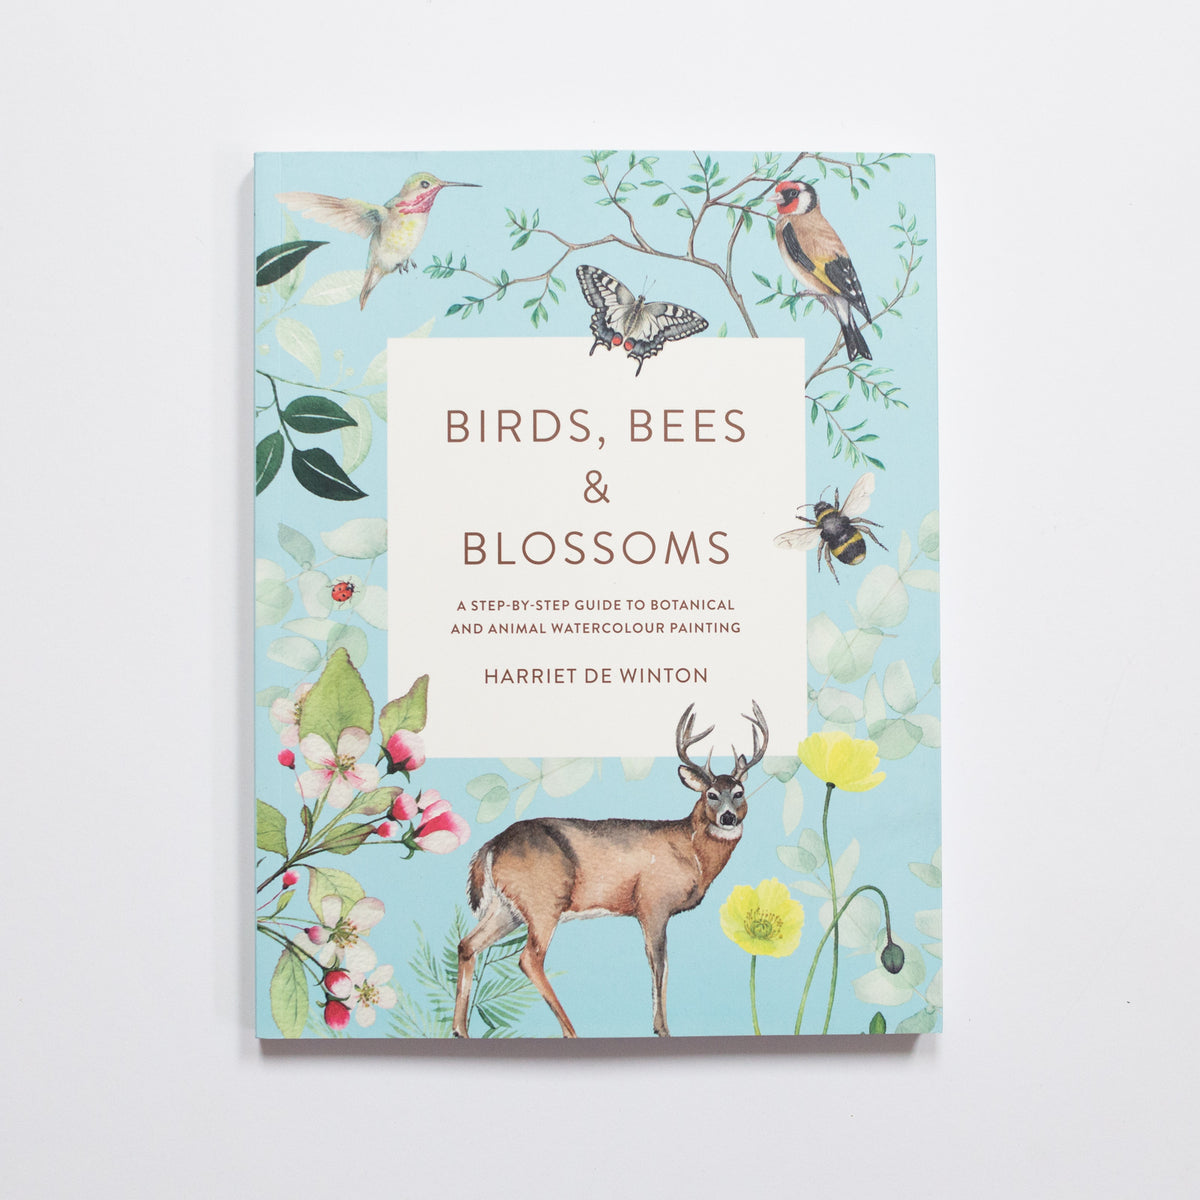 Birds, bees & blossoms by Harriet de Winton